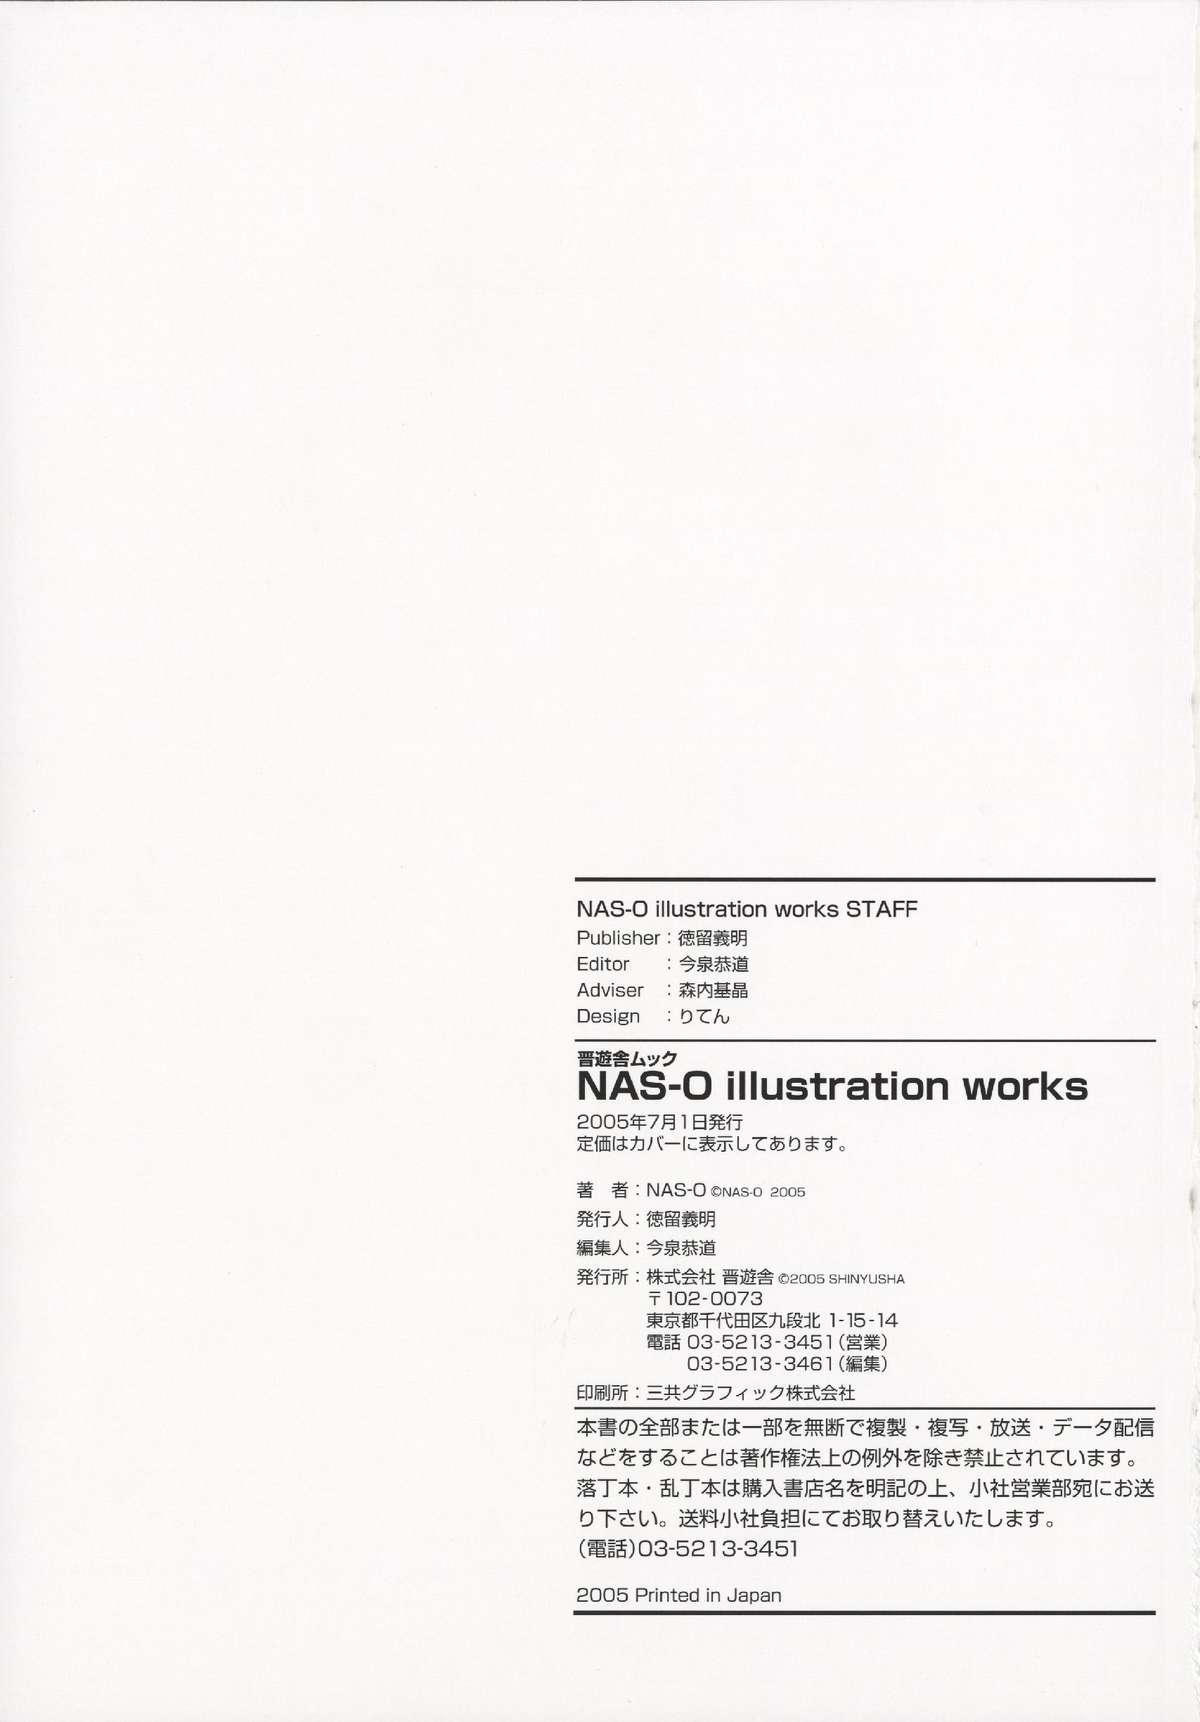 NAS-O illustration works 125